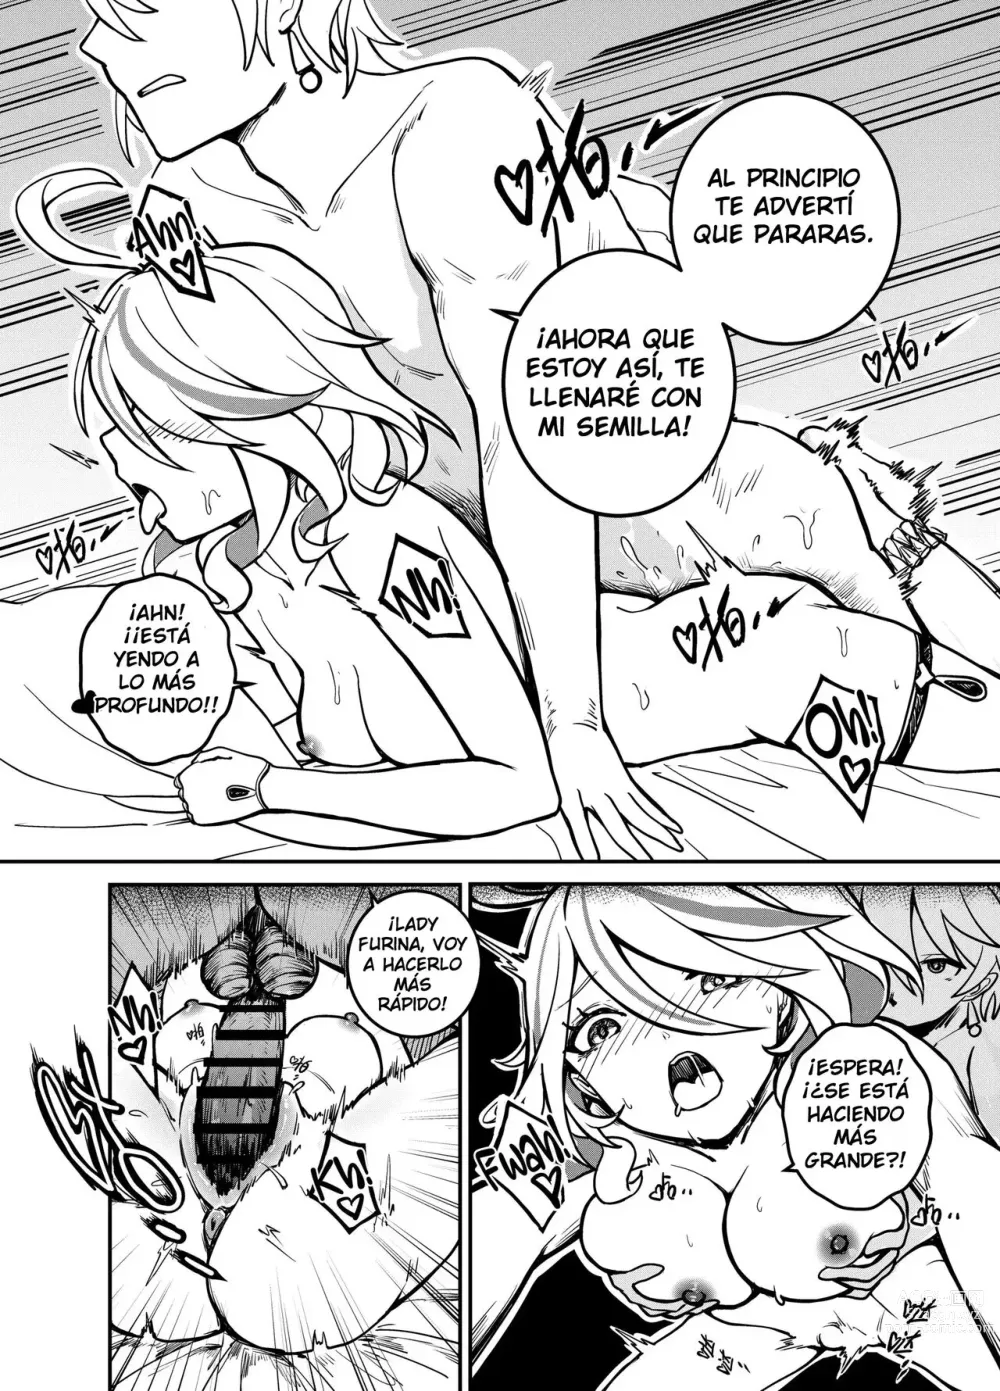 Page 6 of doujinshi Furina Estúpida